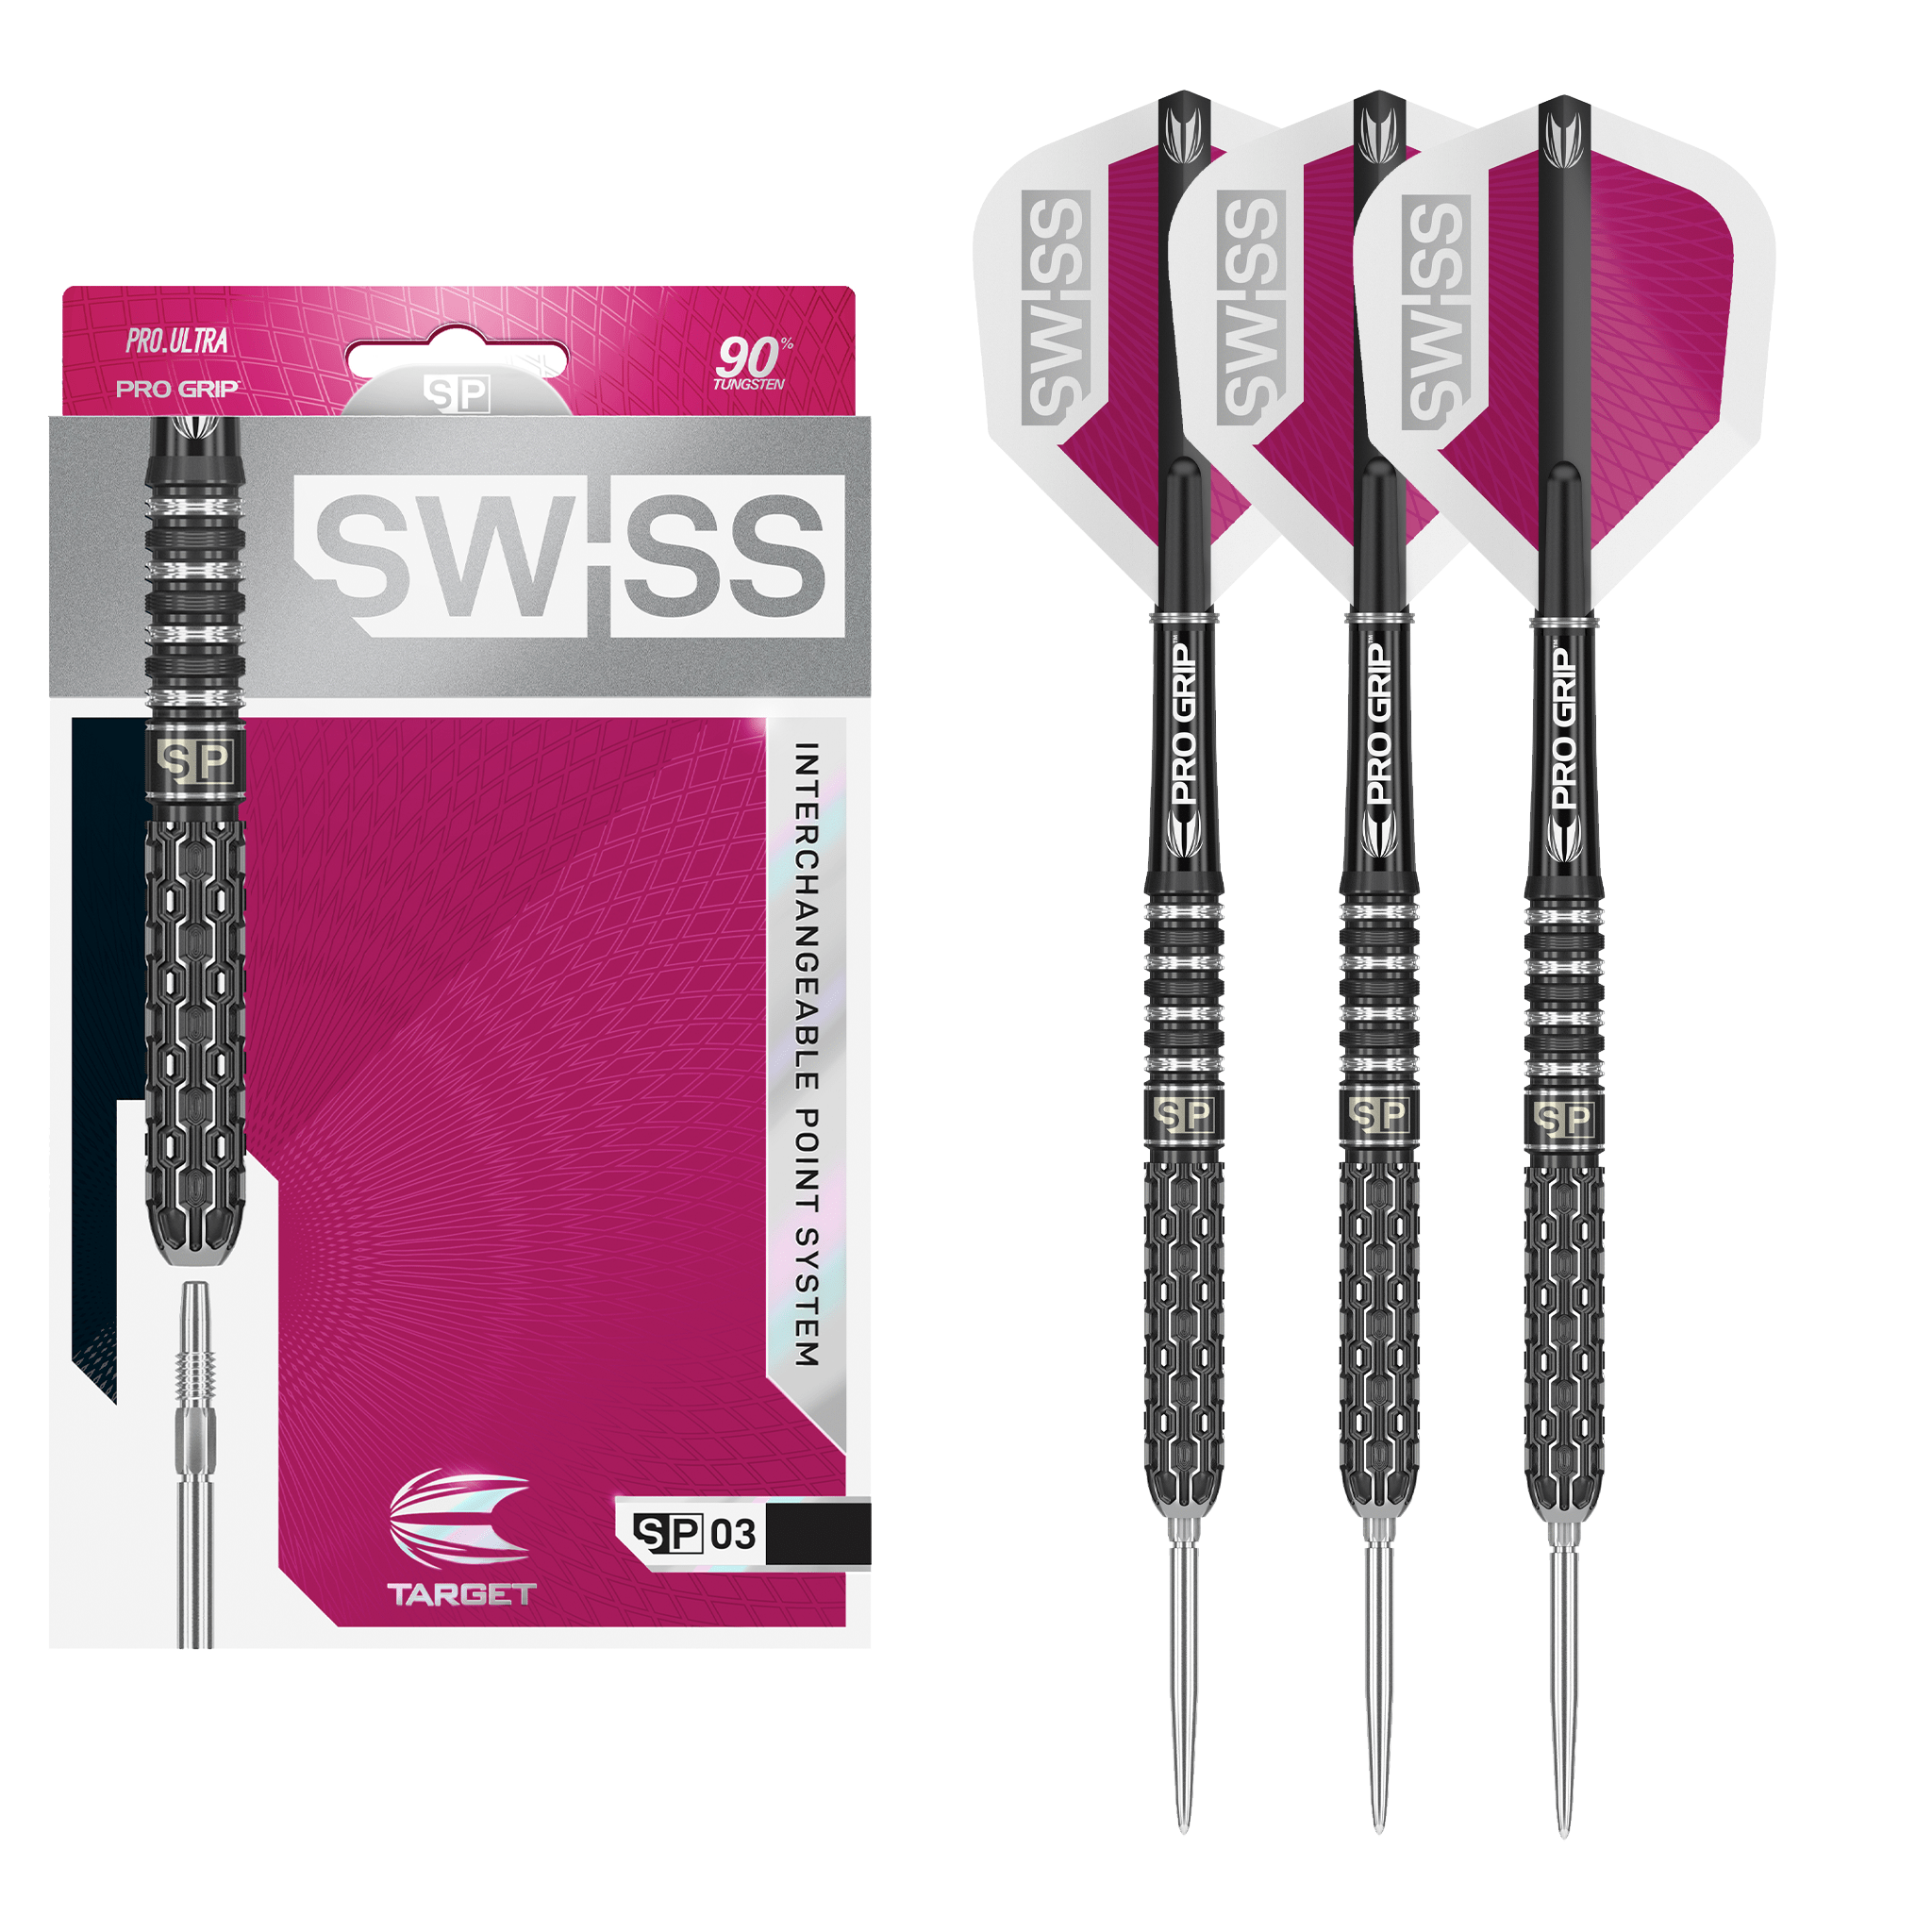 Target Swiss SP03 Swiss Point Steel Tip Darts - 90% Tungsten - 21 Grams Darts